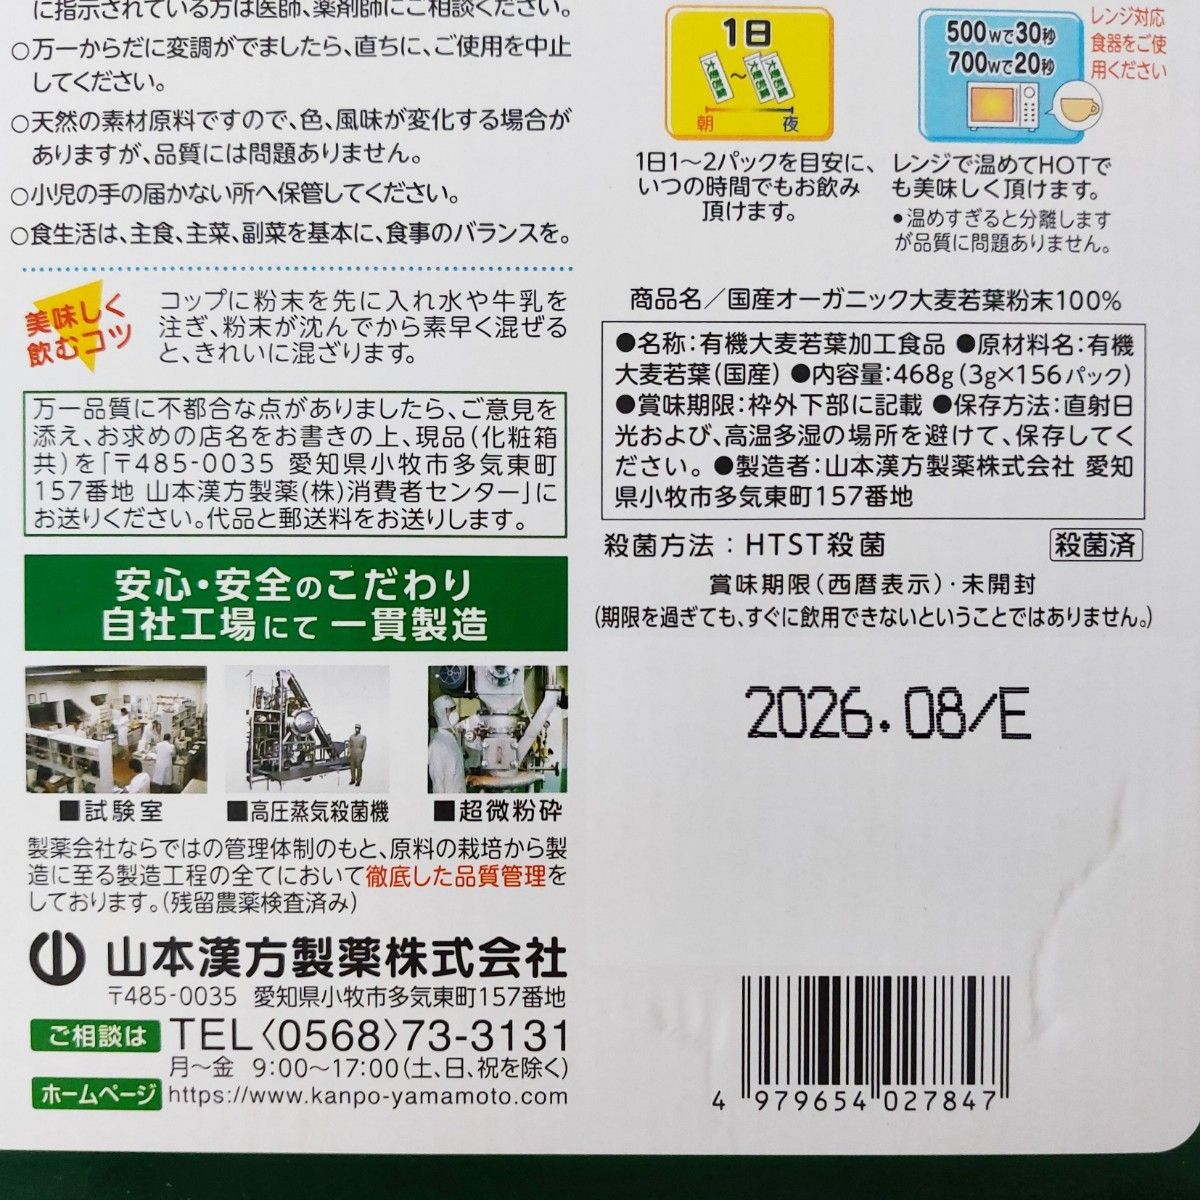 新品 山本漢方の青汁 国産オーガニック 有機大麦若葉 3g個包装×52袋セット